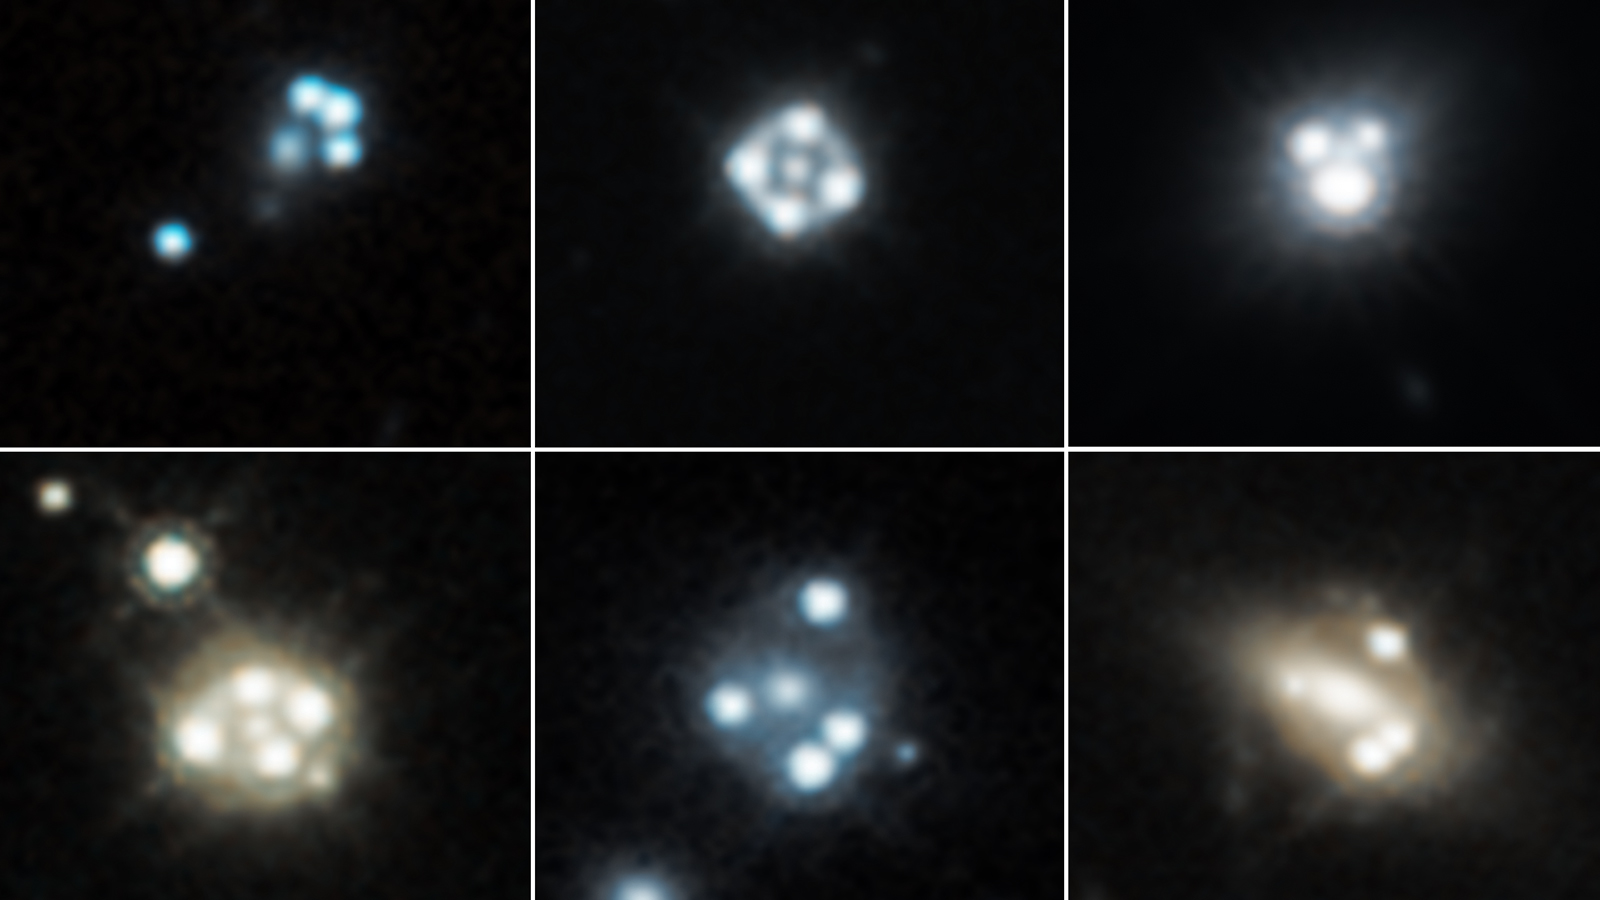 Gravitationally lensed quasars